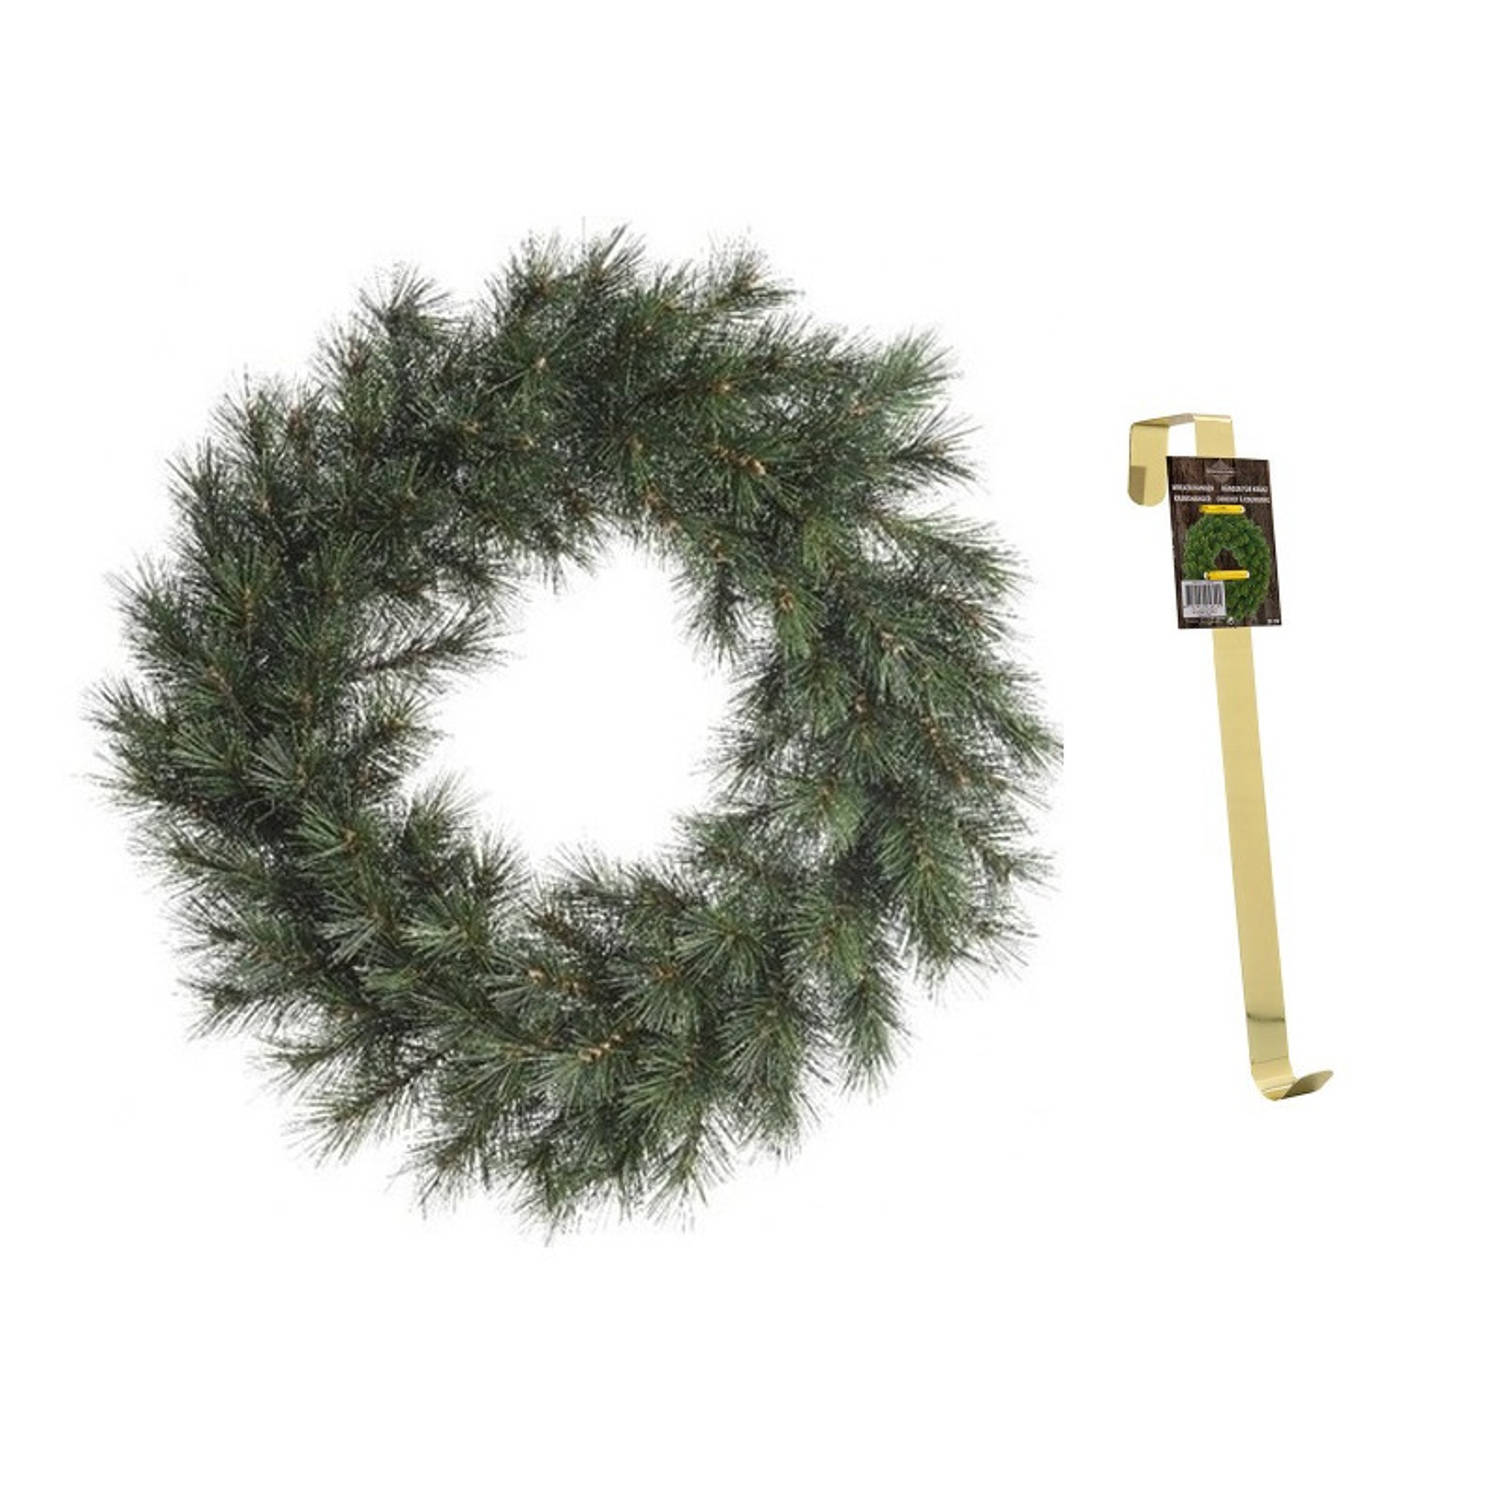 Groene kerstkrans 60 cm Malmo met gouden hanger Kerstkransen